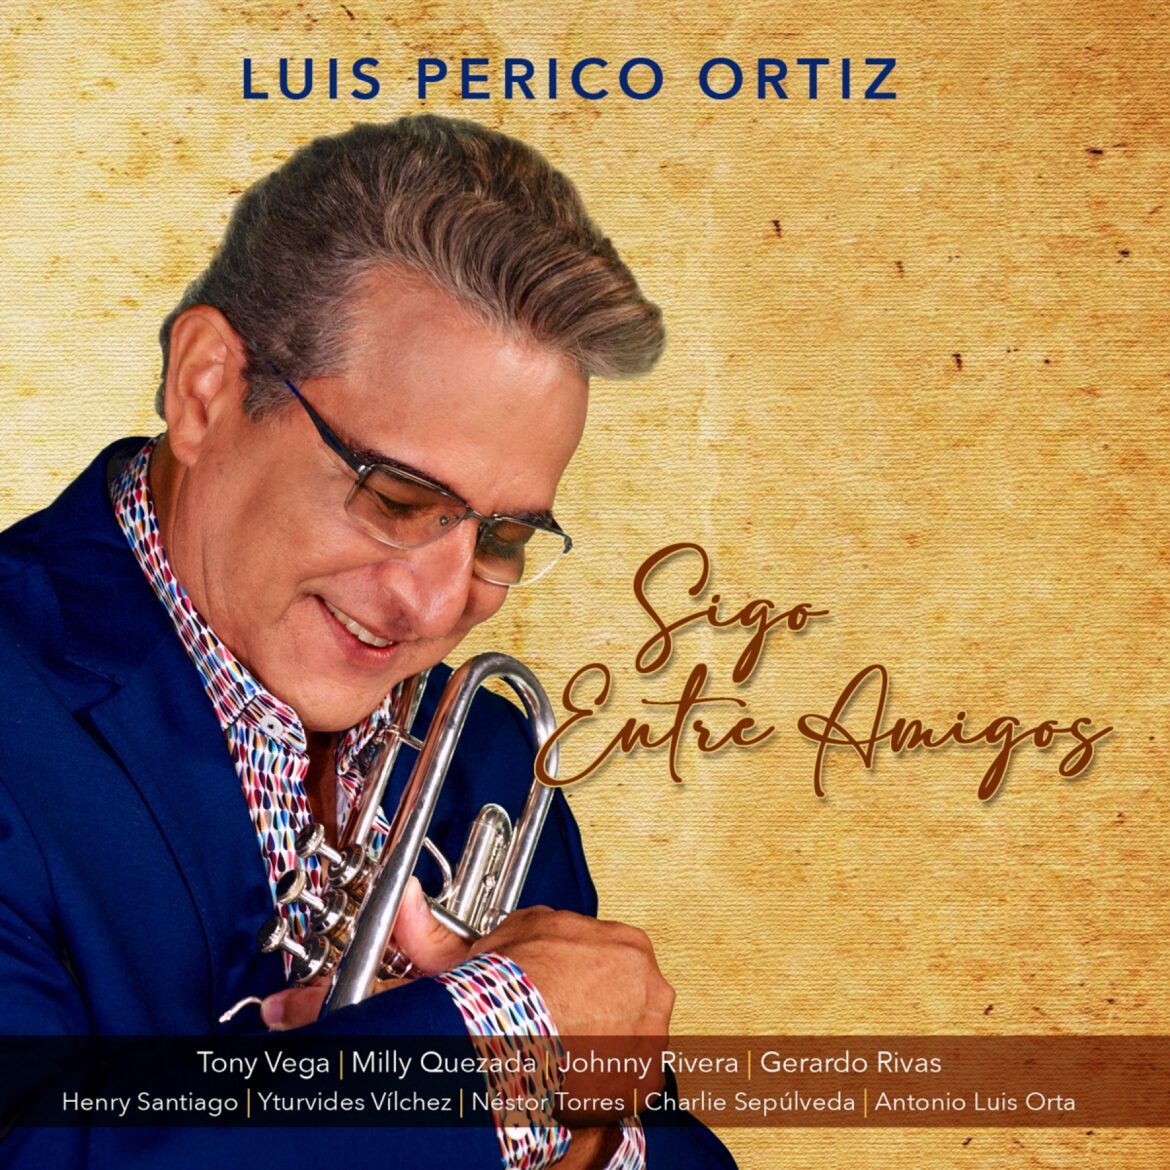 El Maestro Luis Perico Ortiz lanza disco con la participación de Milly Quezada, Tony Vega, Johnny Rivera, Gerardo Rivas, y muchos más